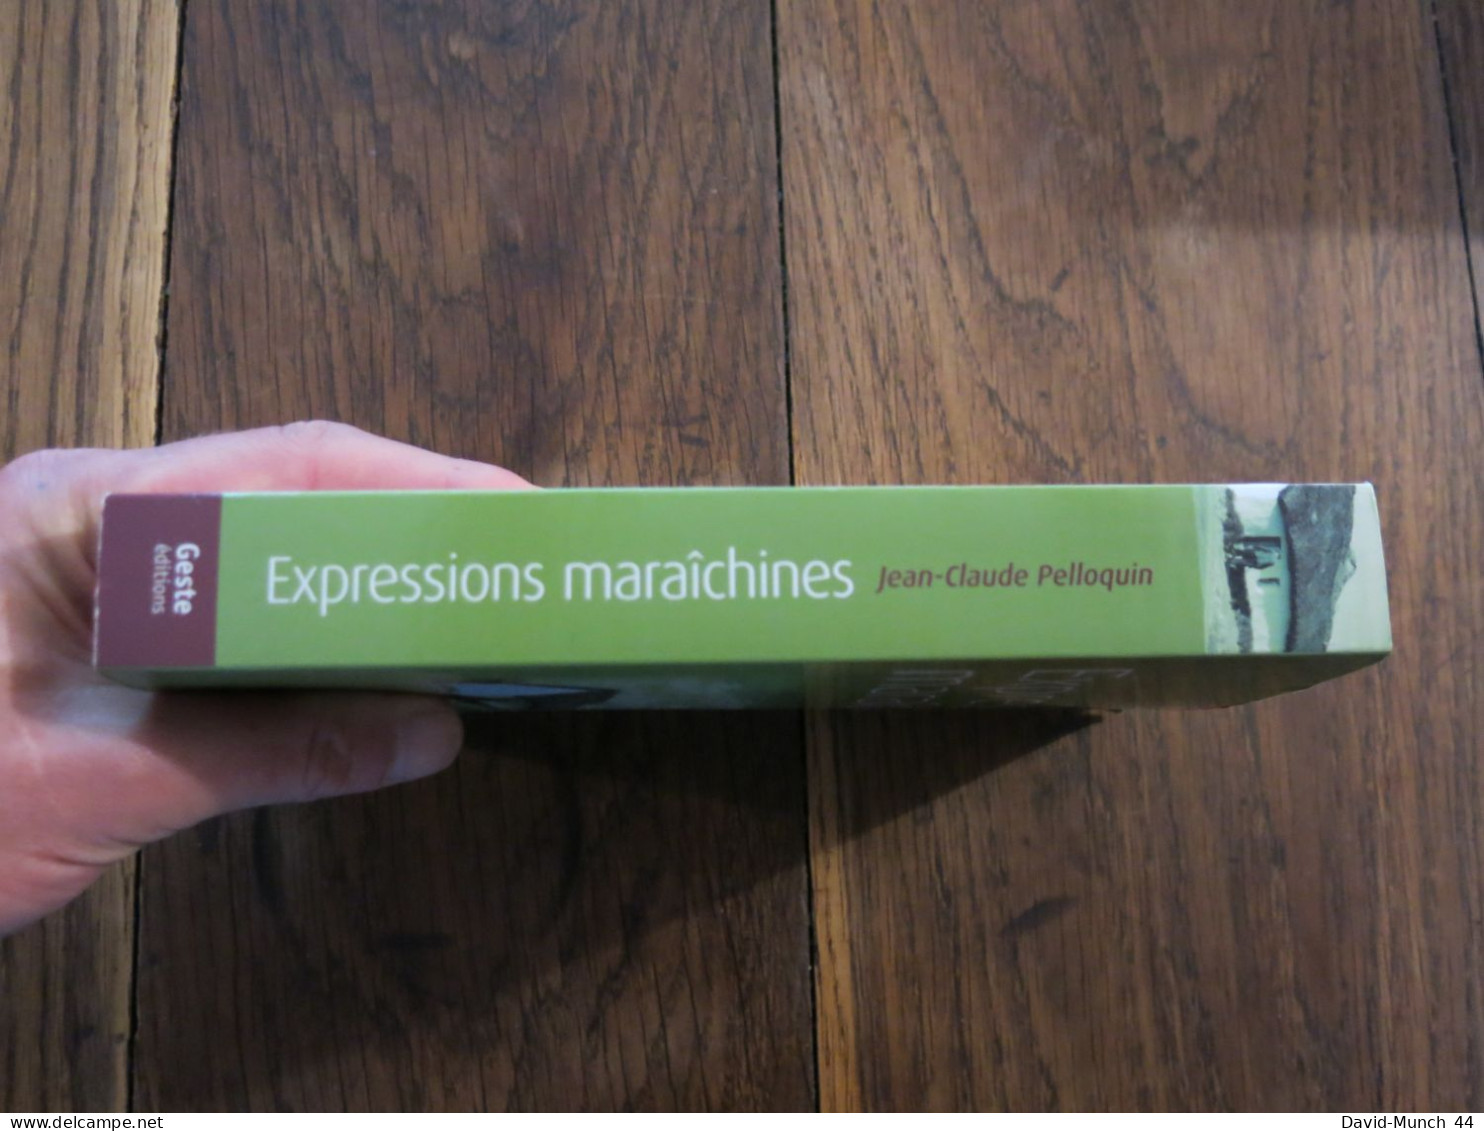 Expressions Maraichines De Vendée De Jean-Claude Pelloquin. Geste Editions. 2008 - Politik